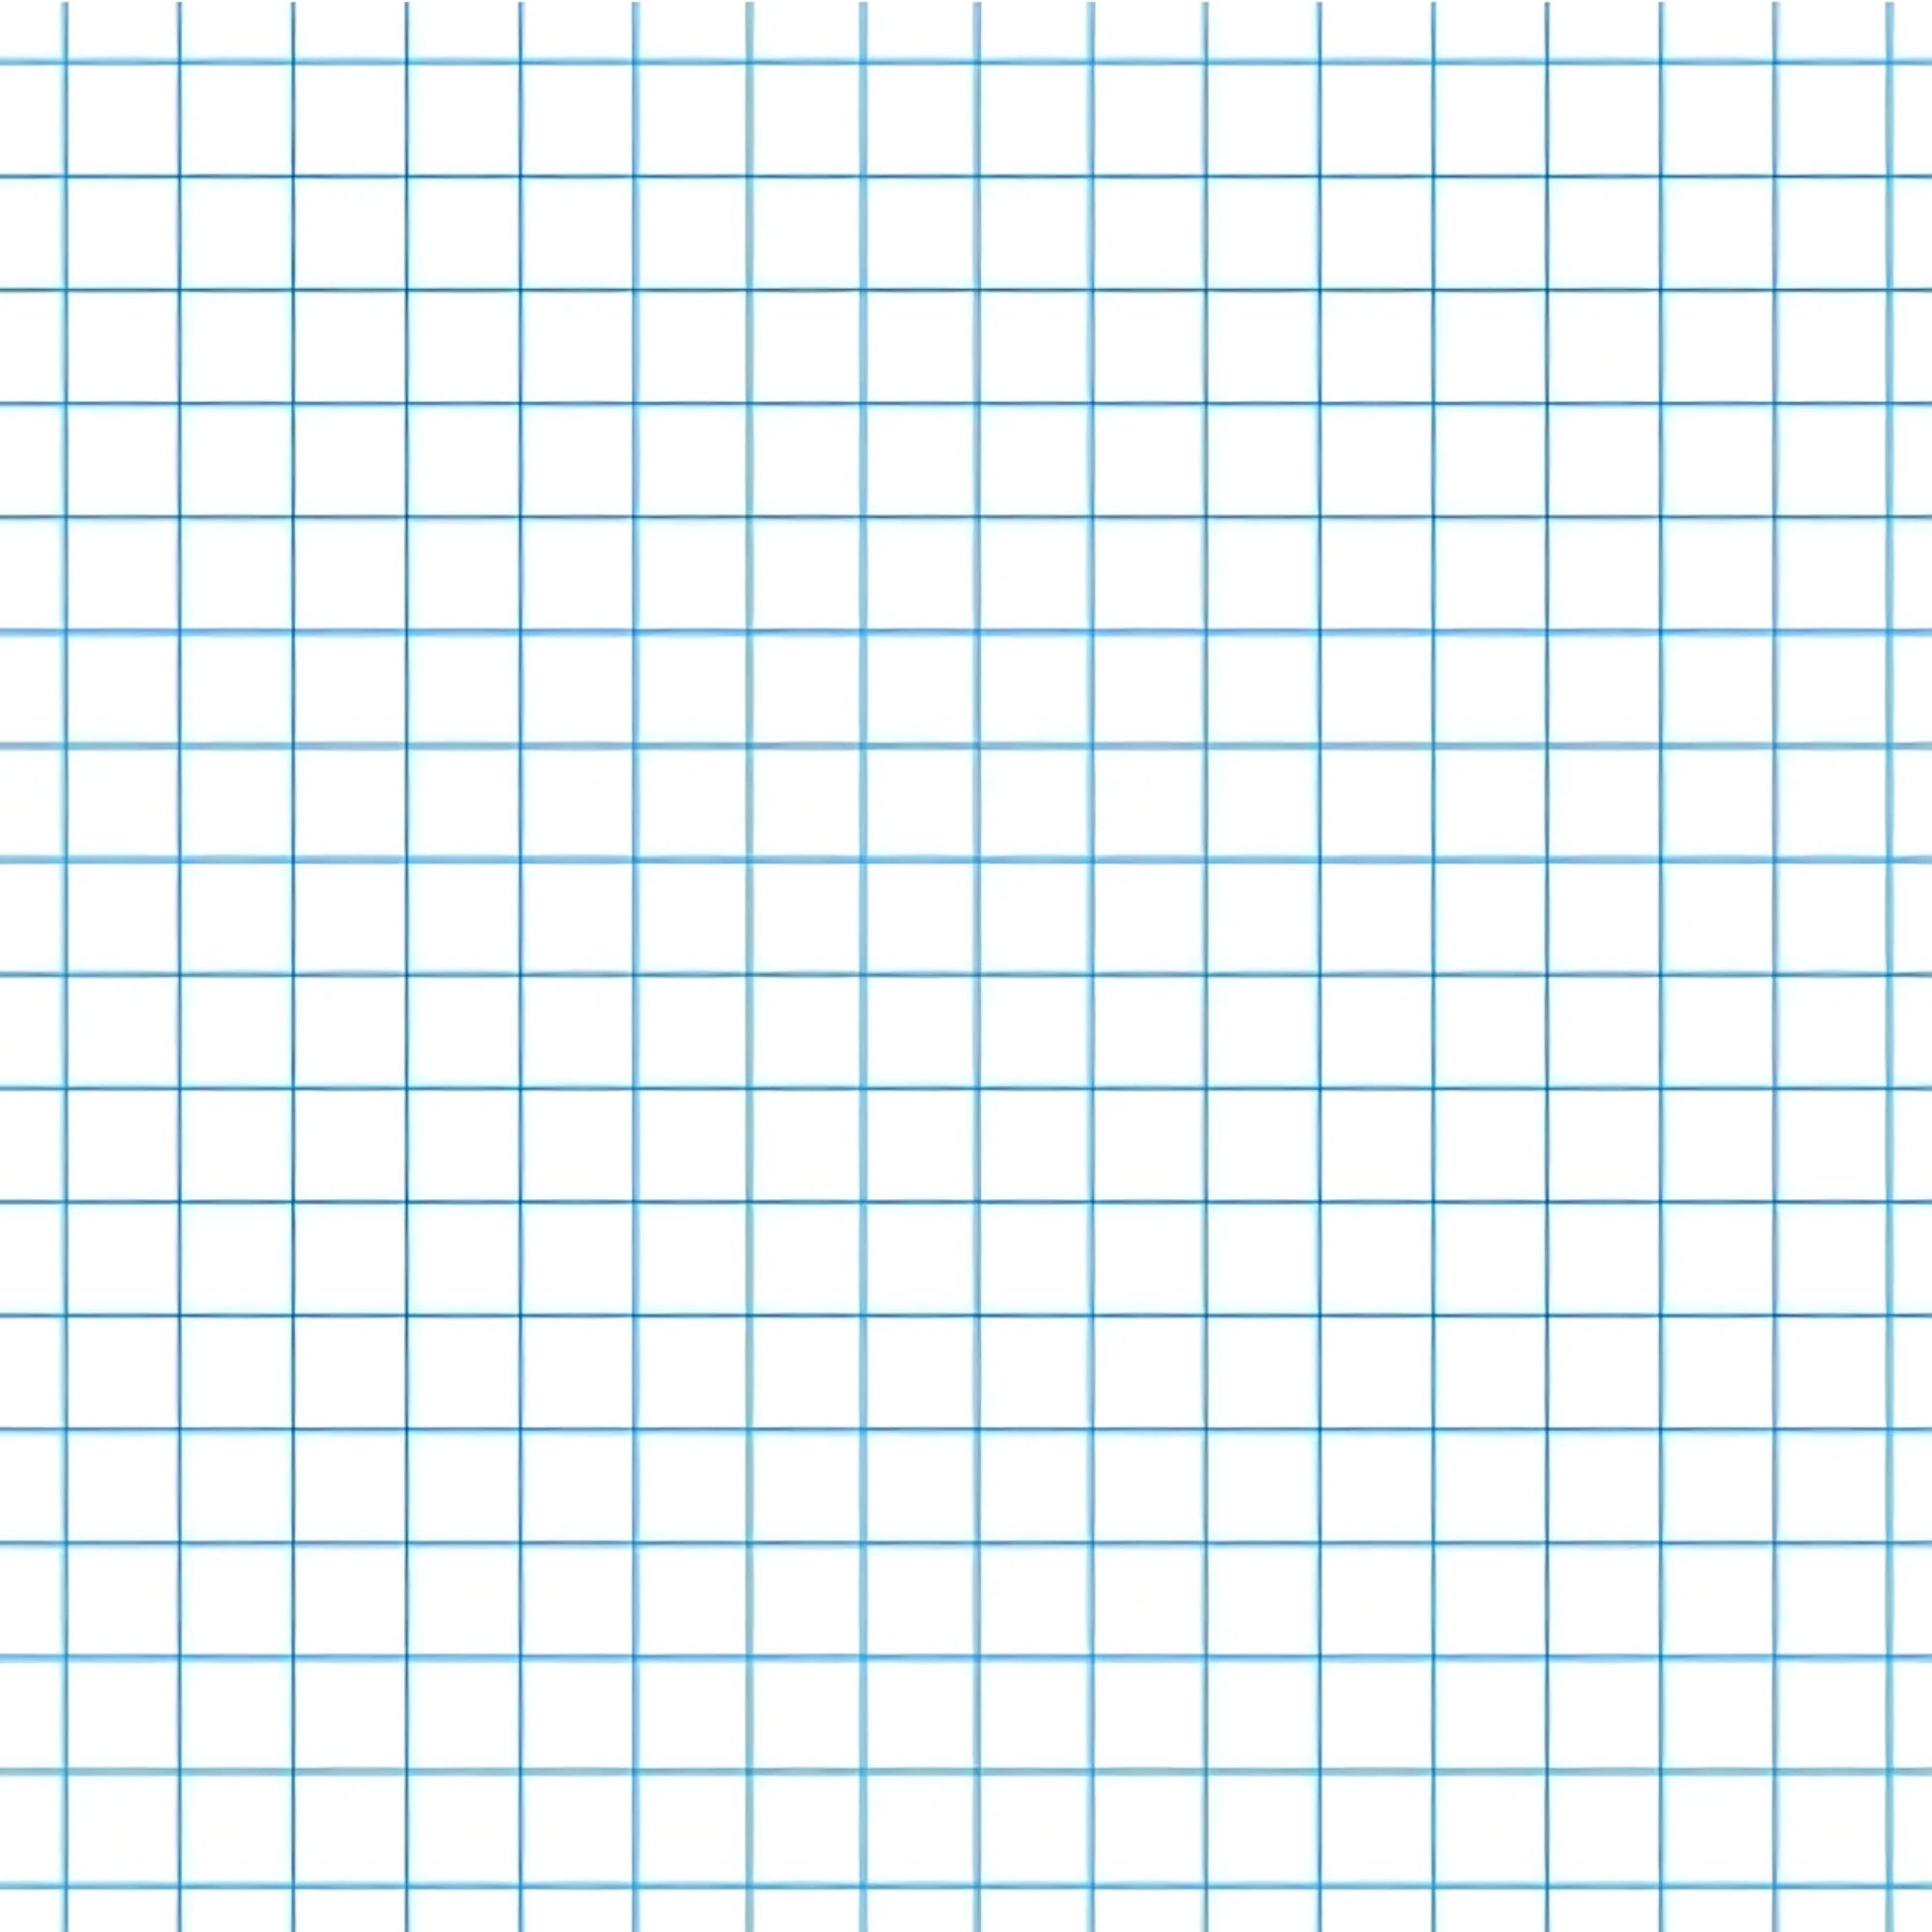 Graph paper - 5x5, Woodless - Alder & Alouette